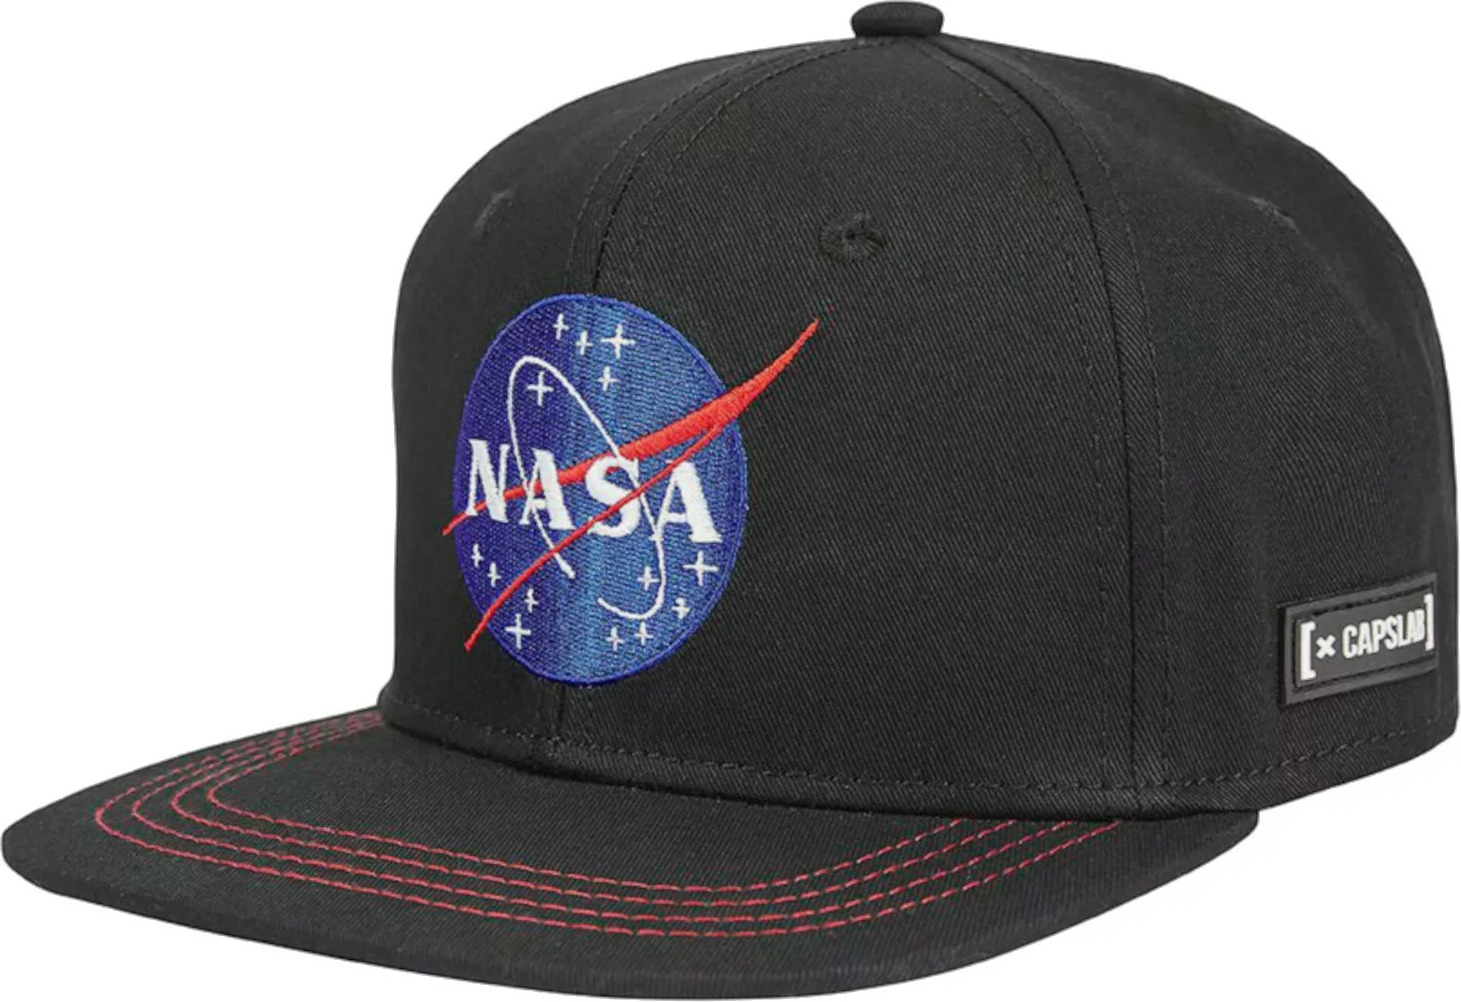 ČERNÁ KŠILTOVKA CAPSLAB SPACE MISSION NASA SNAPBACK CAP CL-NASA-1-US2 Velikost: ONE SIZE